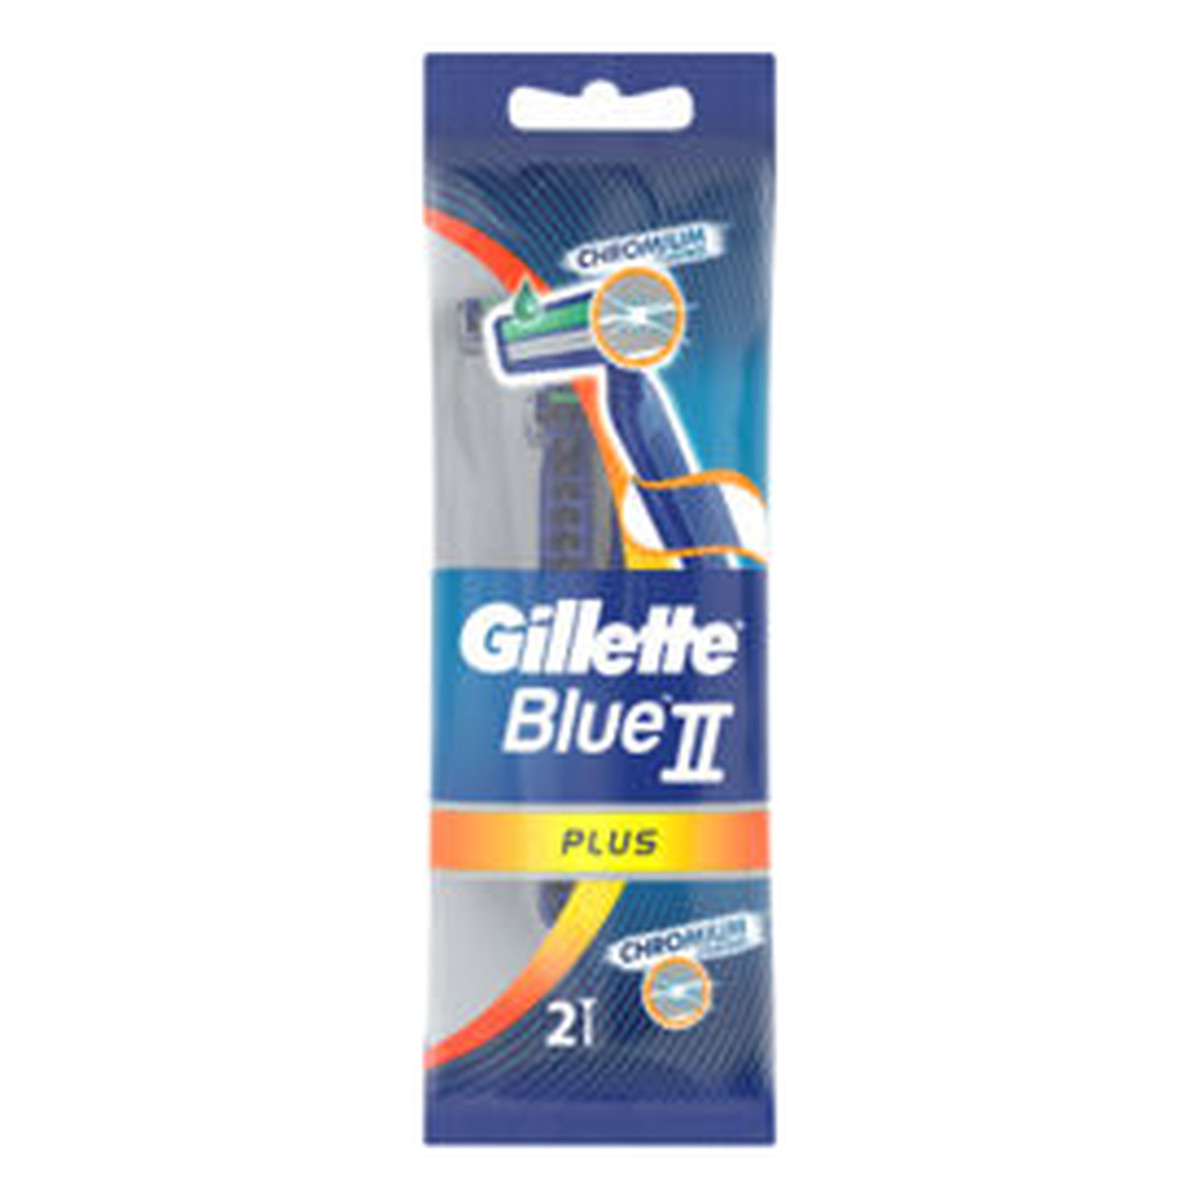 Gillette BLUE II PLUS JEDNORAZOWE MASZYNKI DO GOLENIA 2 SZTUKI